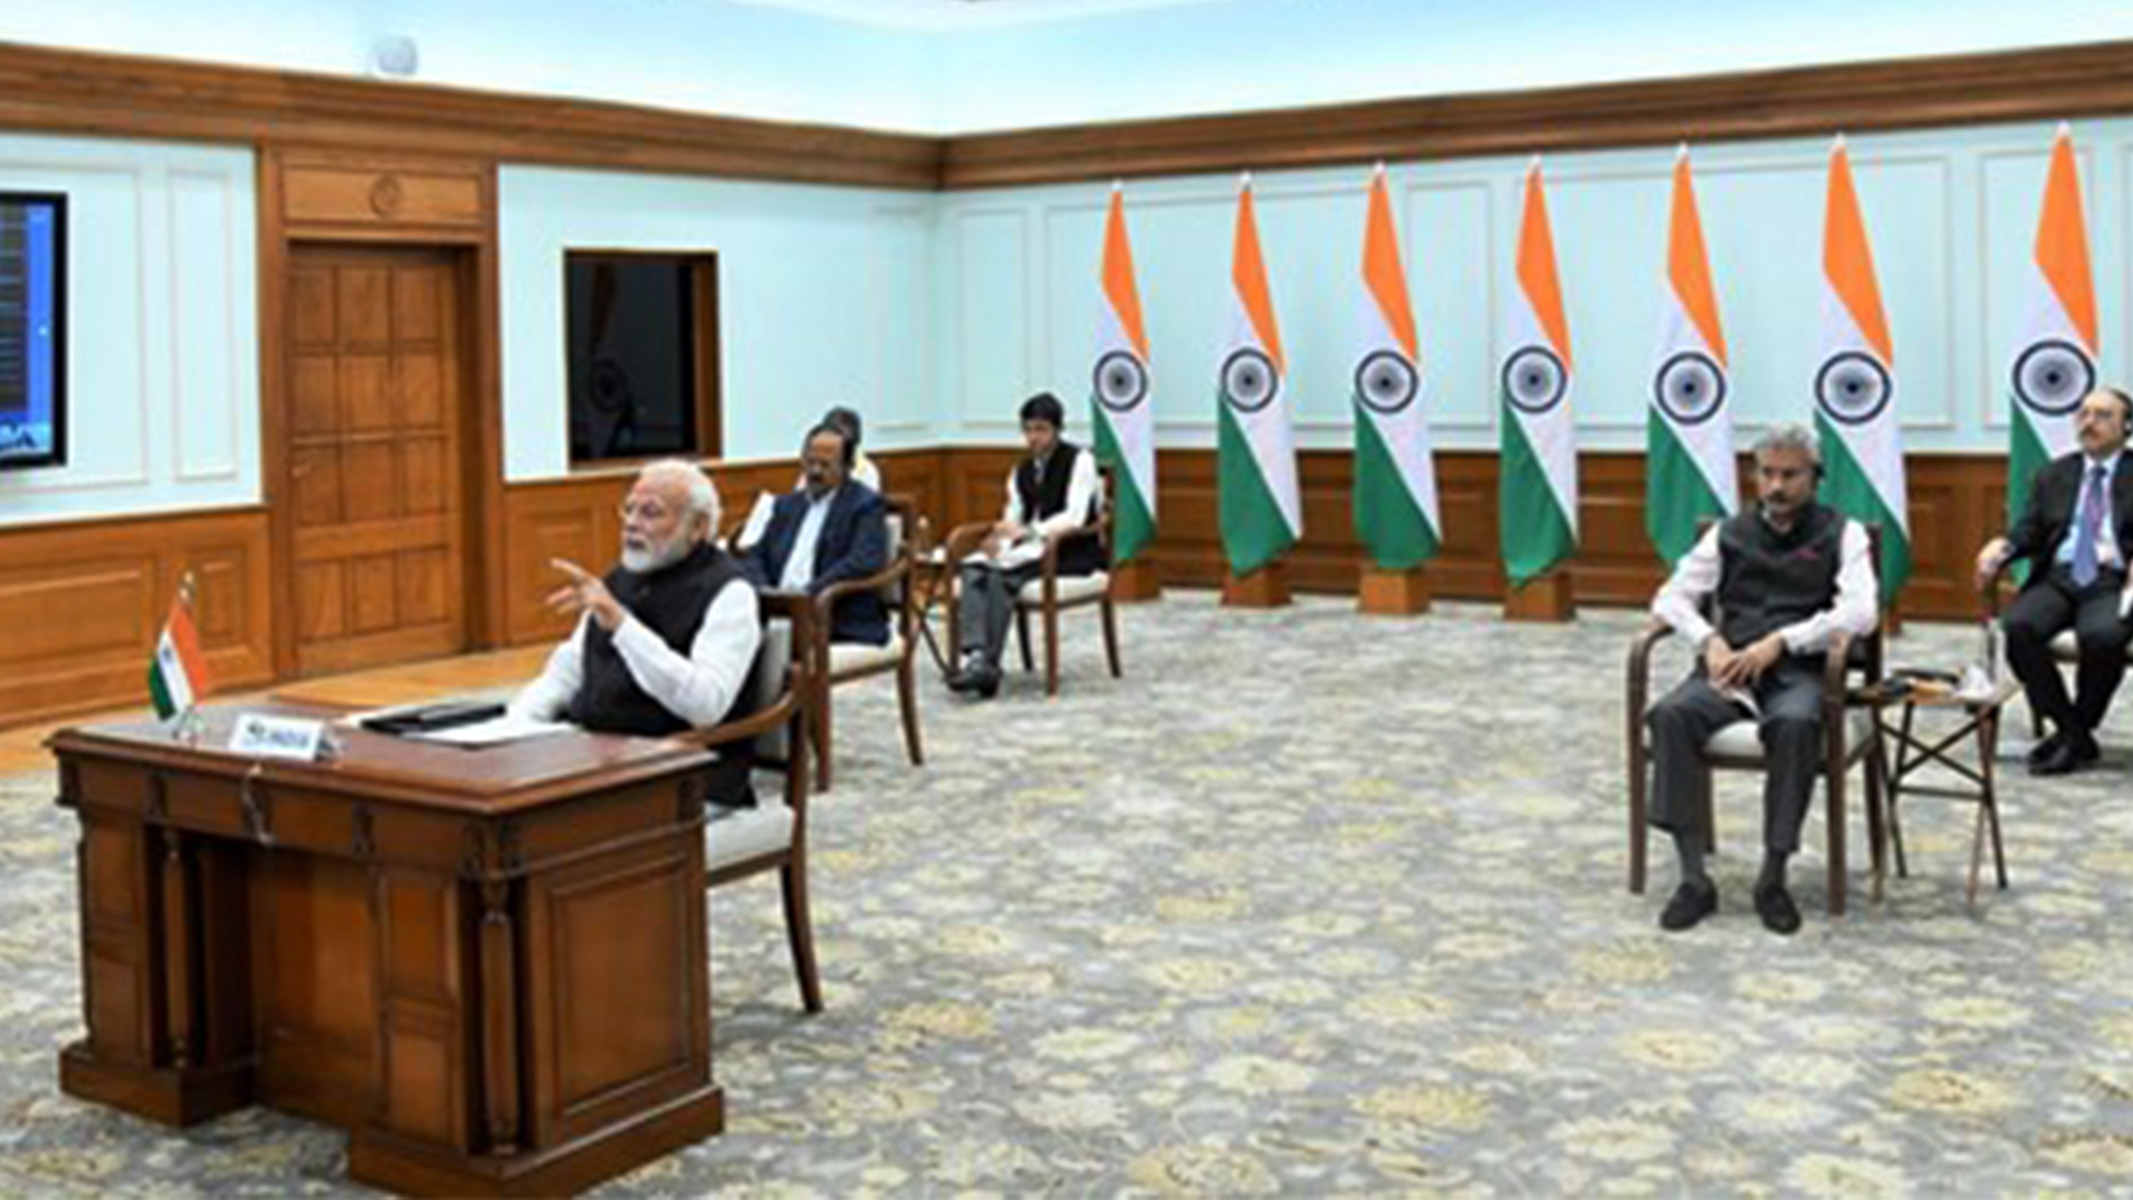 Narendra Modi, Indiens premiärminister, sitter i ett stort rum med sina medarbetare utspridda bakom sig.